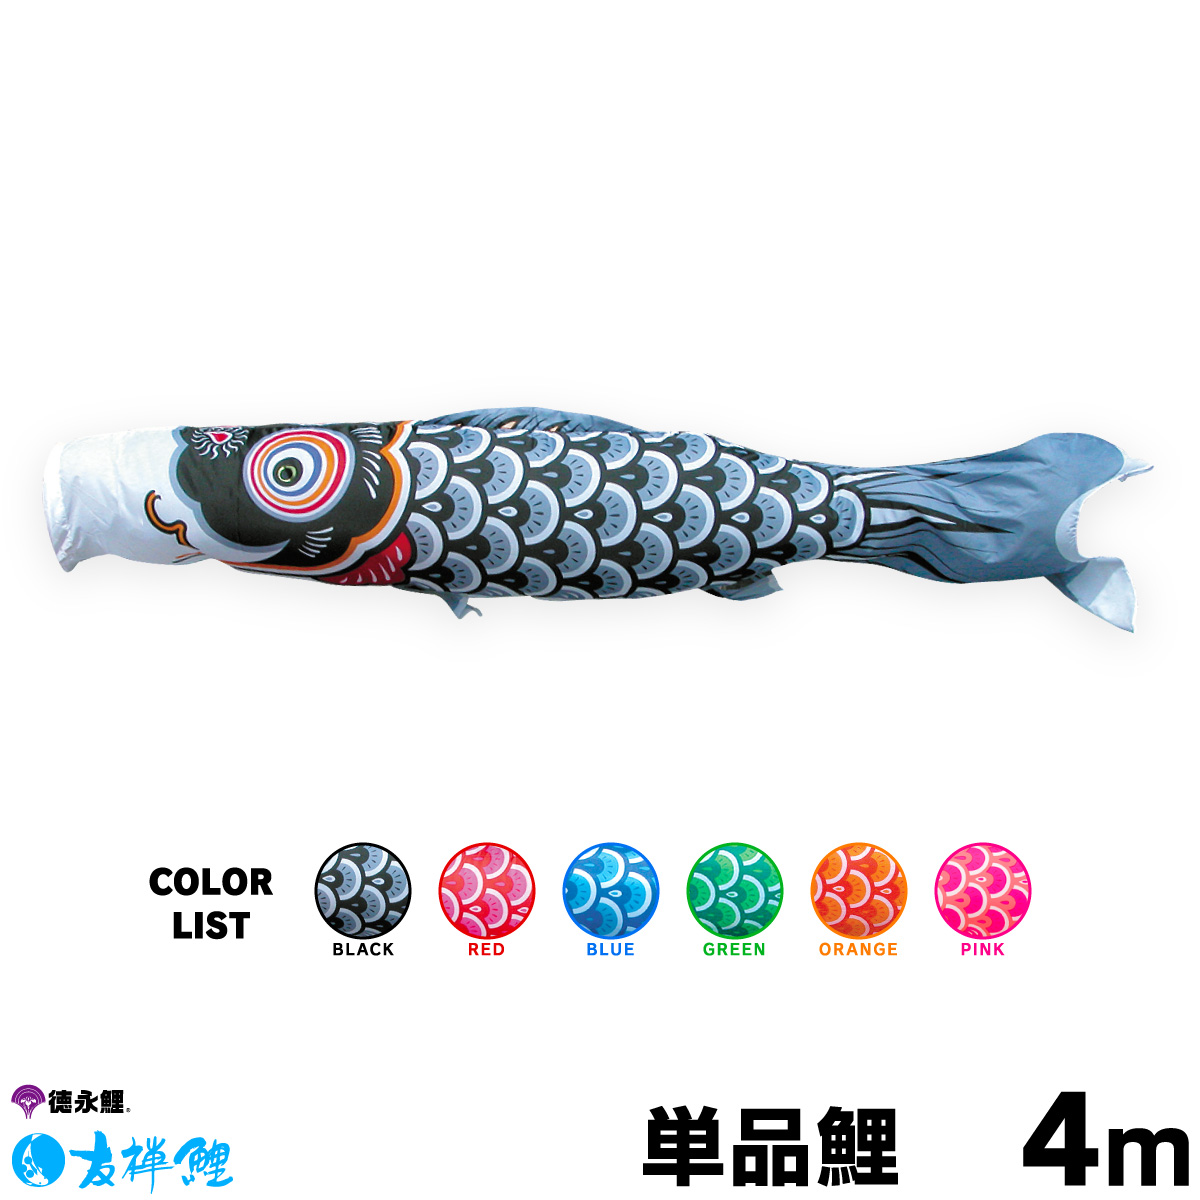 【楽天市場】こいのぼり 単品 鯉のぼり 富士鯉 4m 単品鯉 : 節句 